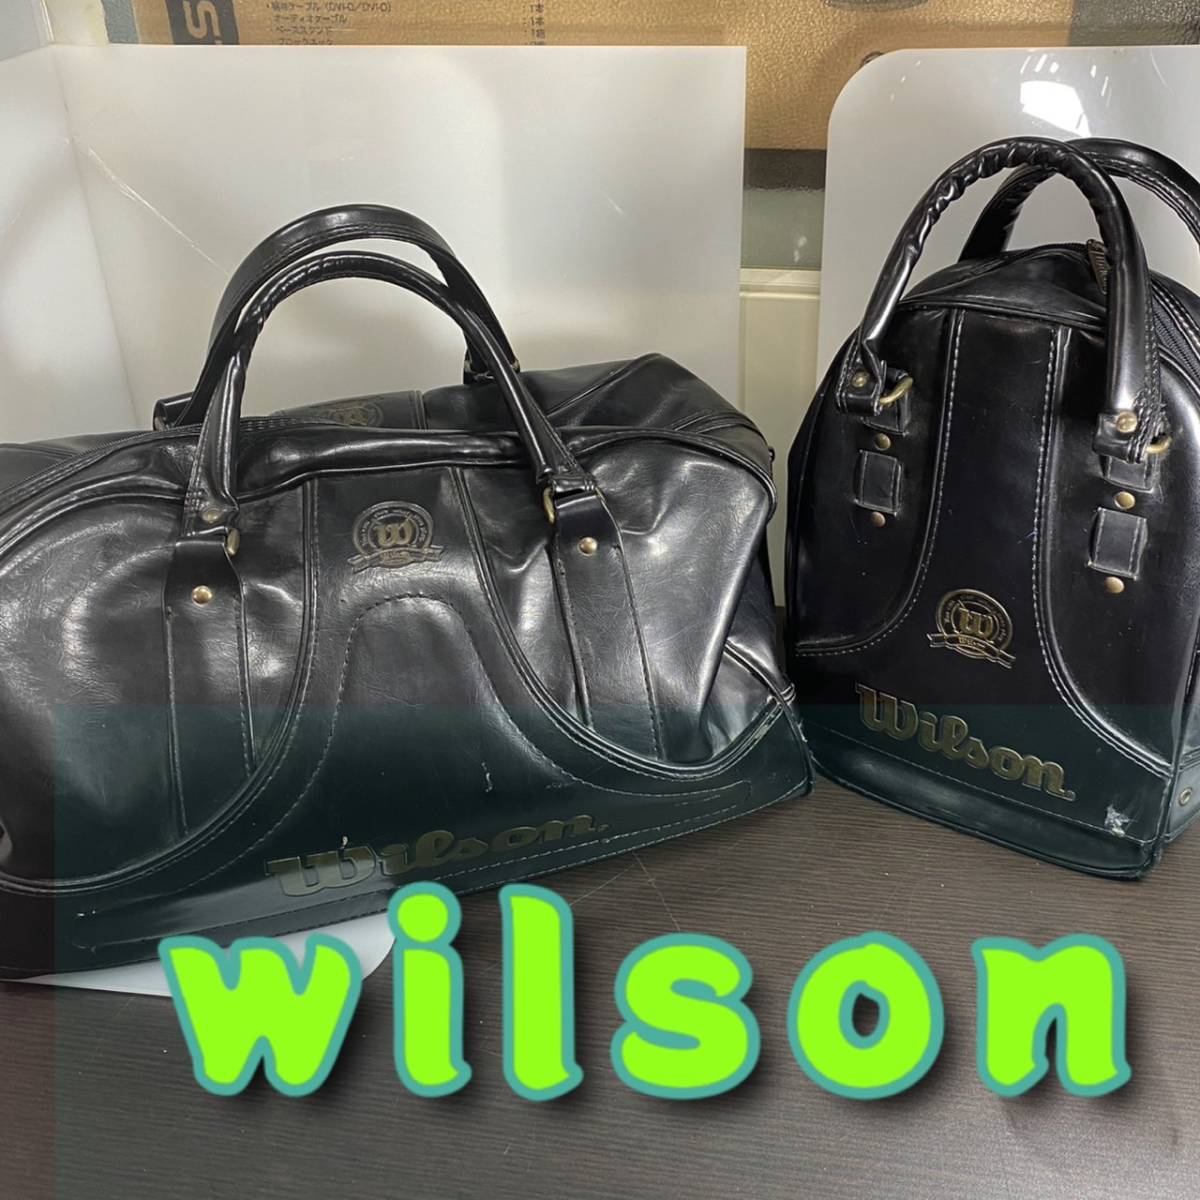 鞄 ◆ Wilson ◆ ボストンバッグ & シューズBag 2点セット BLACK x ゴールド スポーツばっぐ レザー ◆ ウイルソン ◆ メンズ カバンの画像1